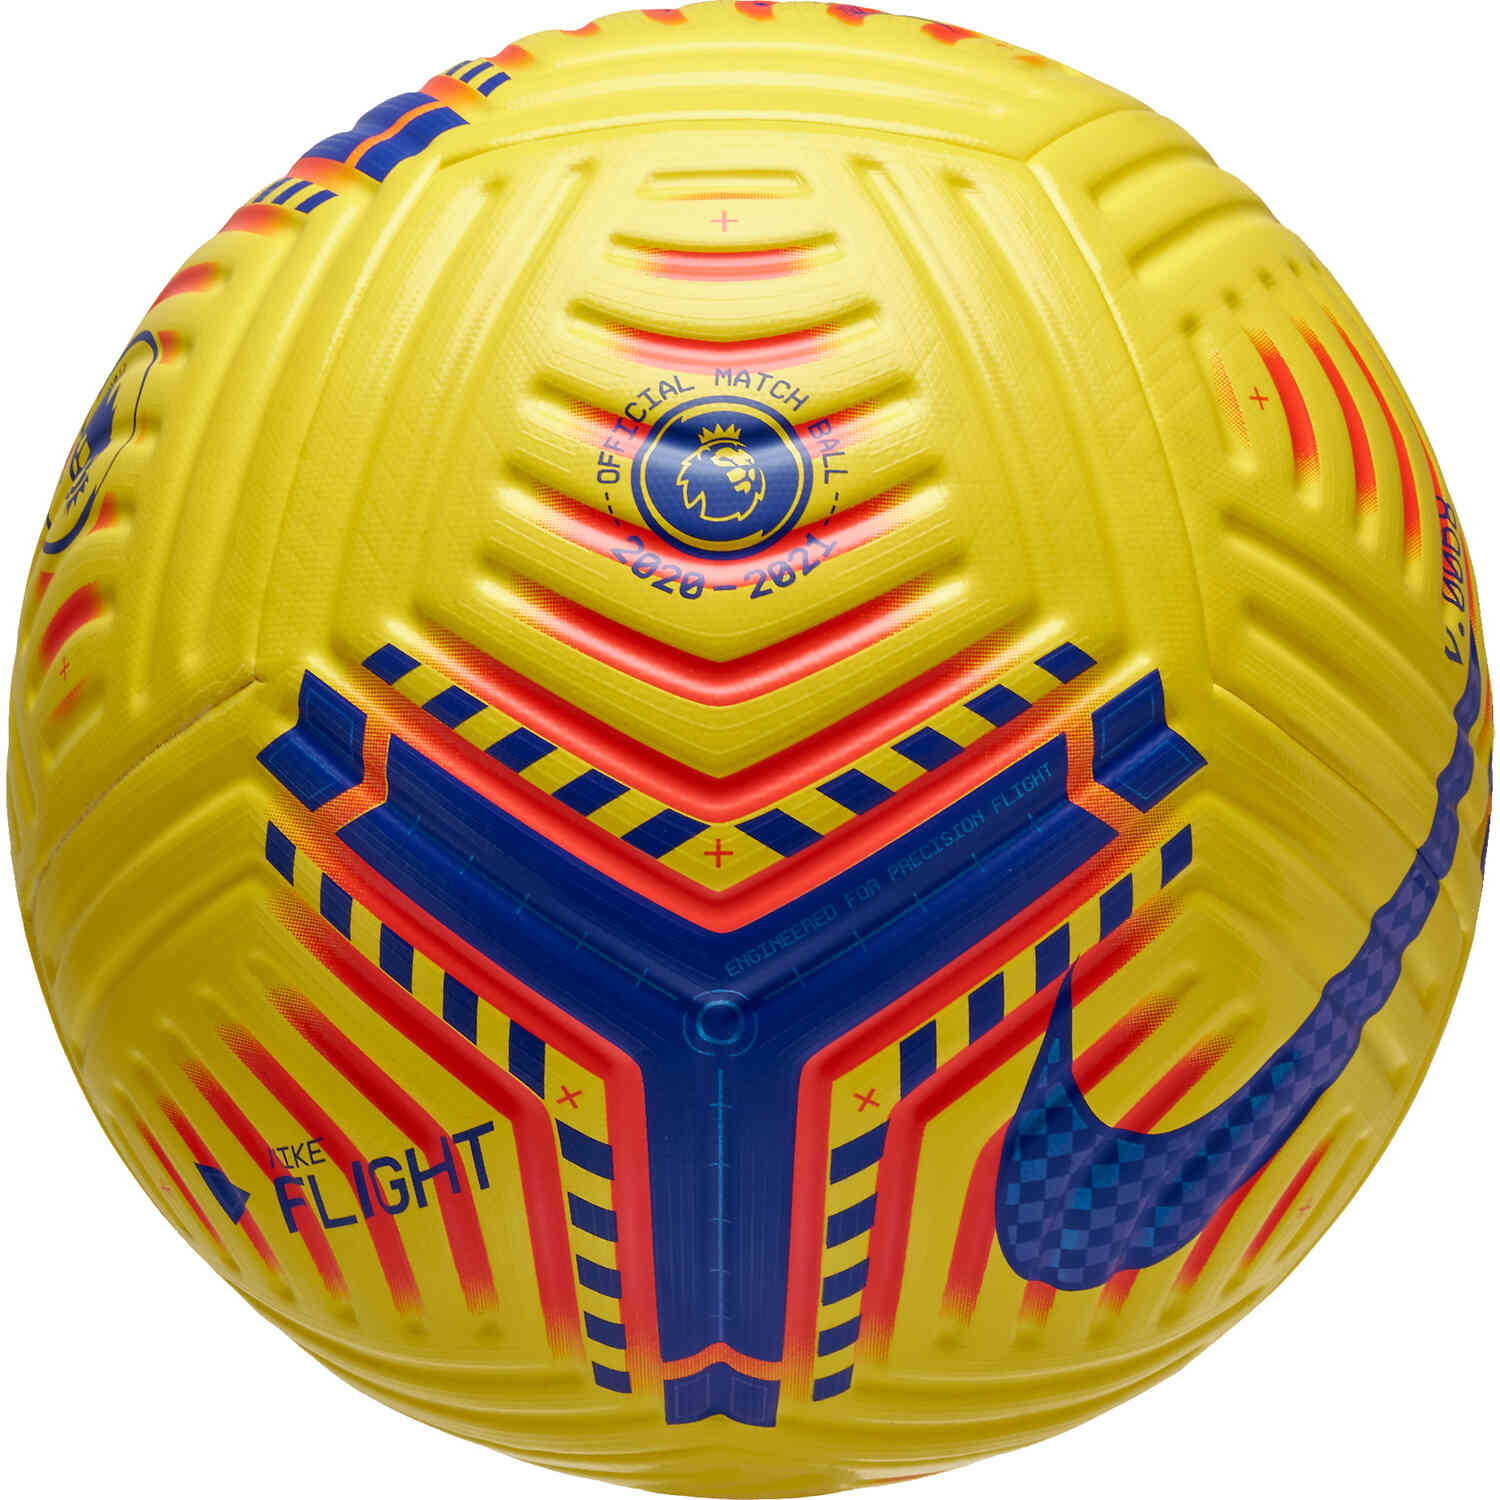 Nike Hi-vis Premier League Flight Official Match Soccer Ball - Yellow